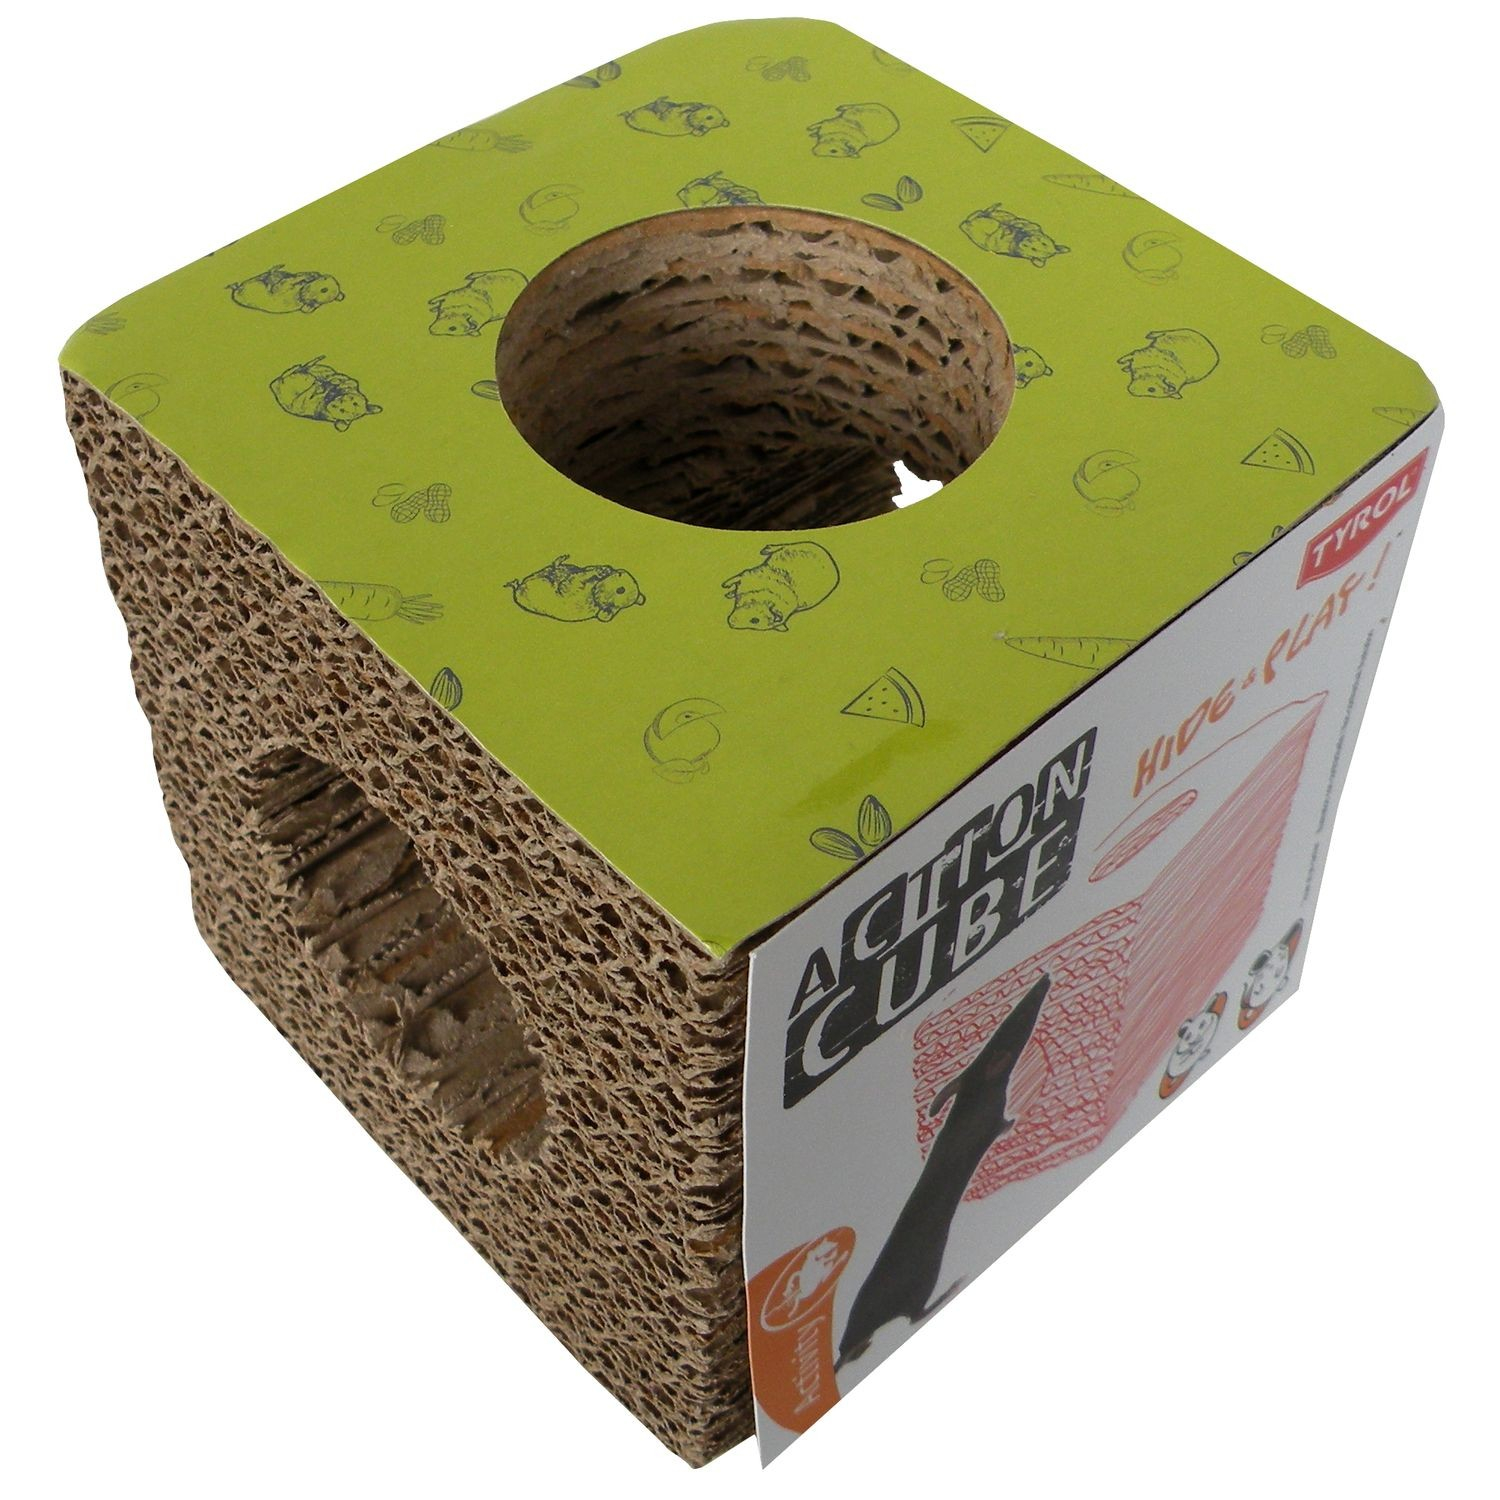 Tunnel kubus van karton voor knaagdieren